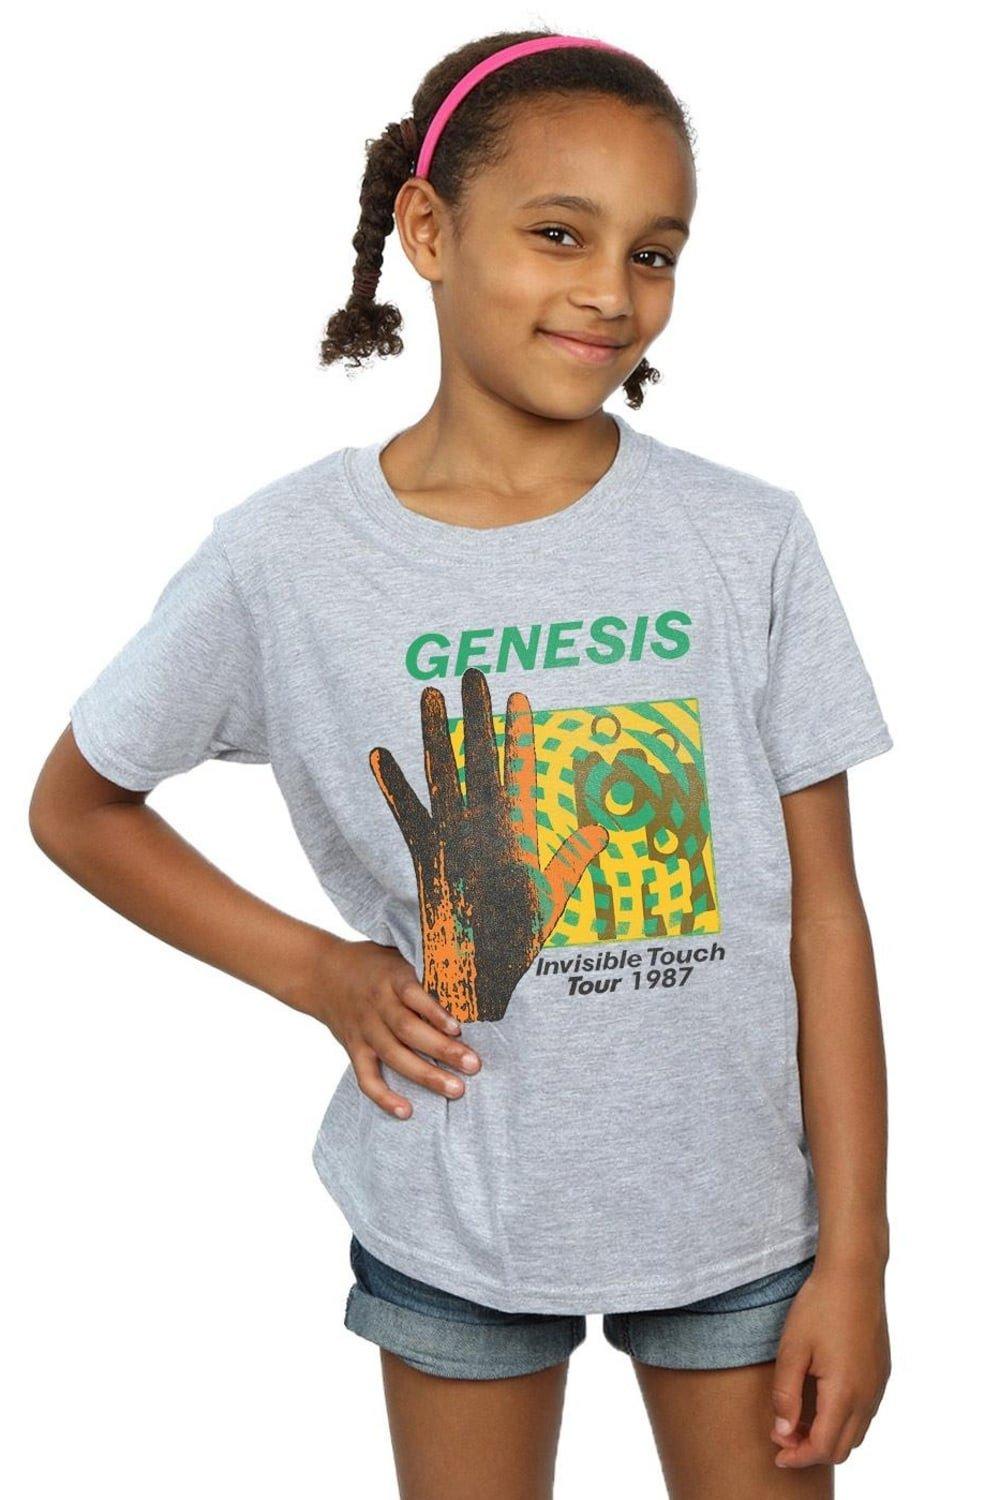 Хлопковая футболка Invisible Touch Tour Genesis, серый